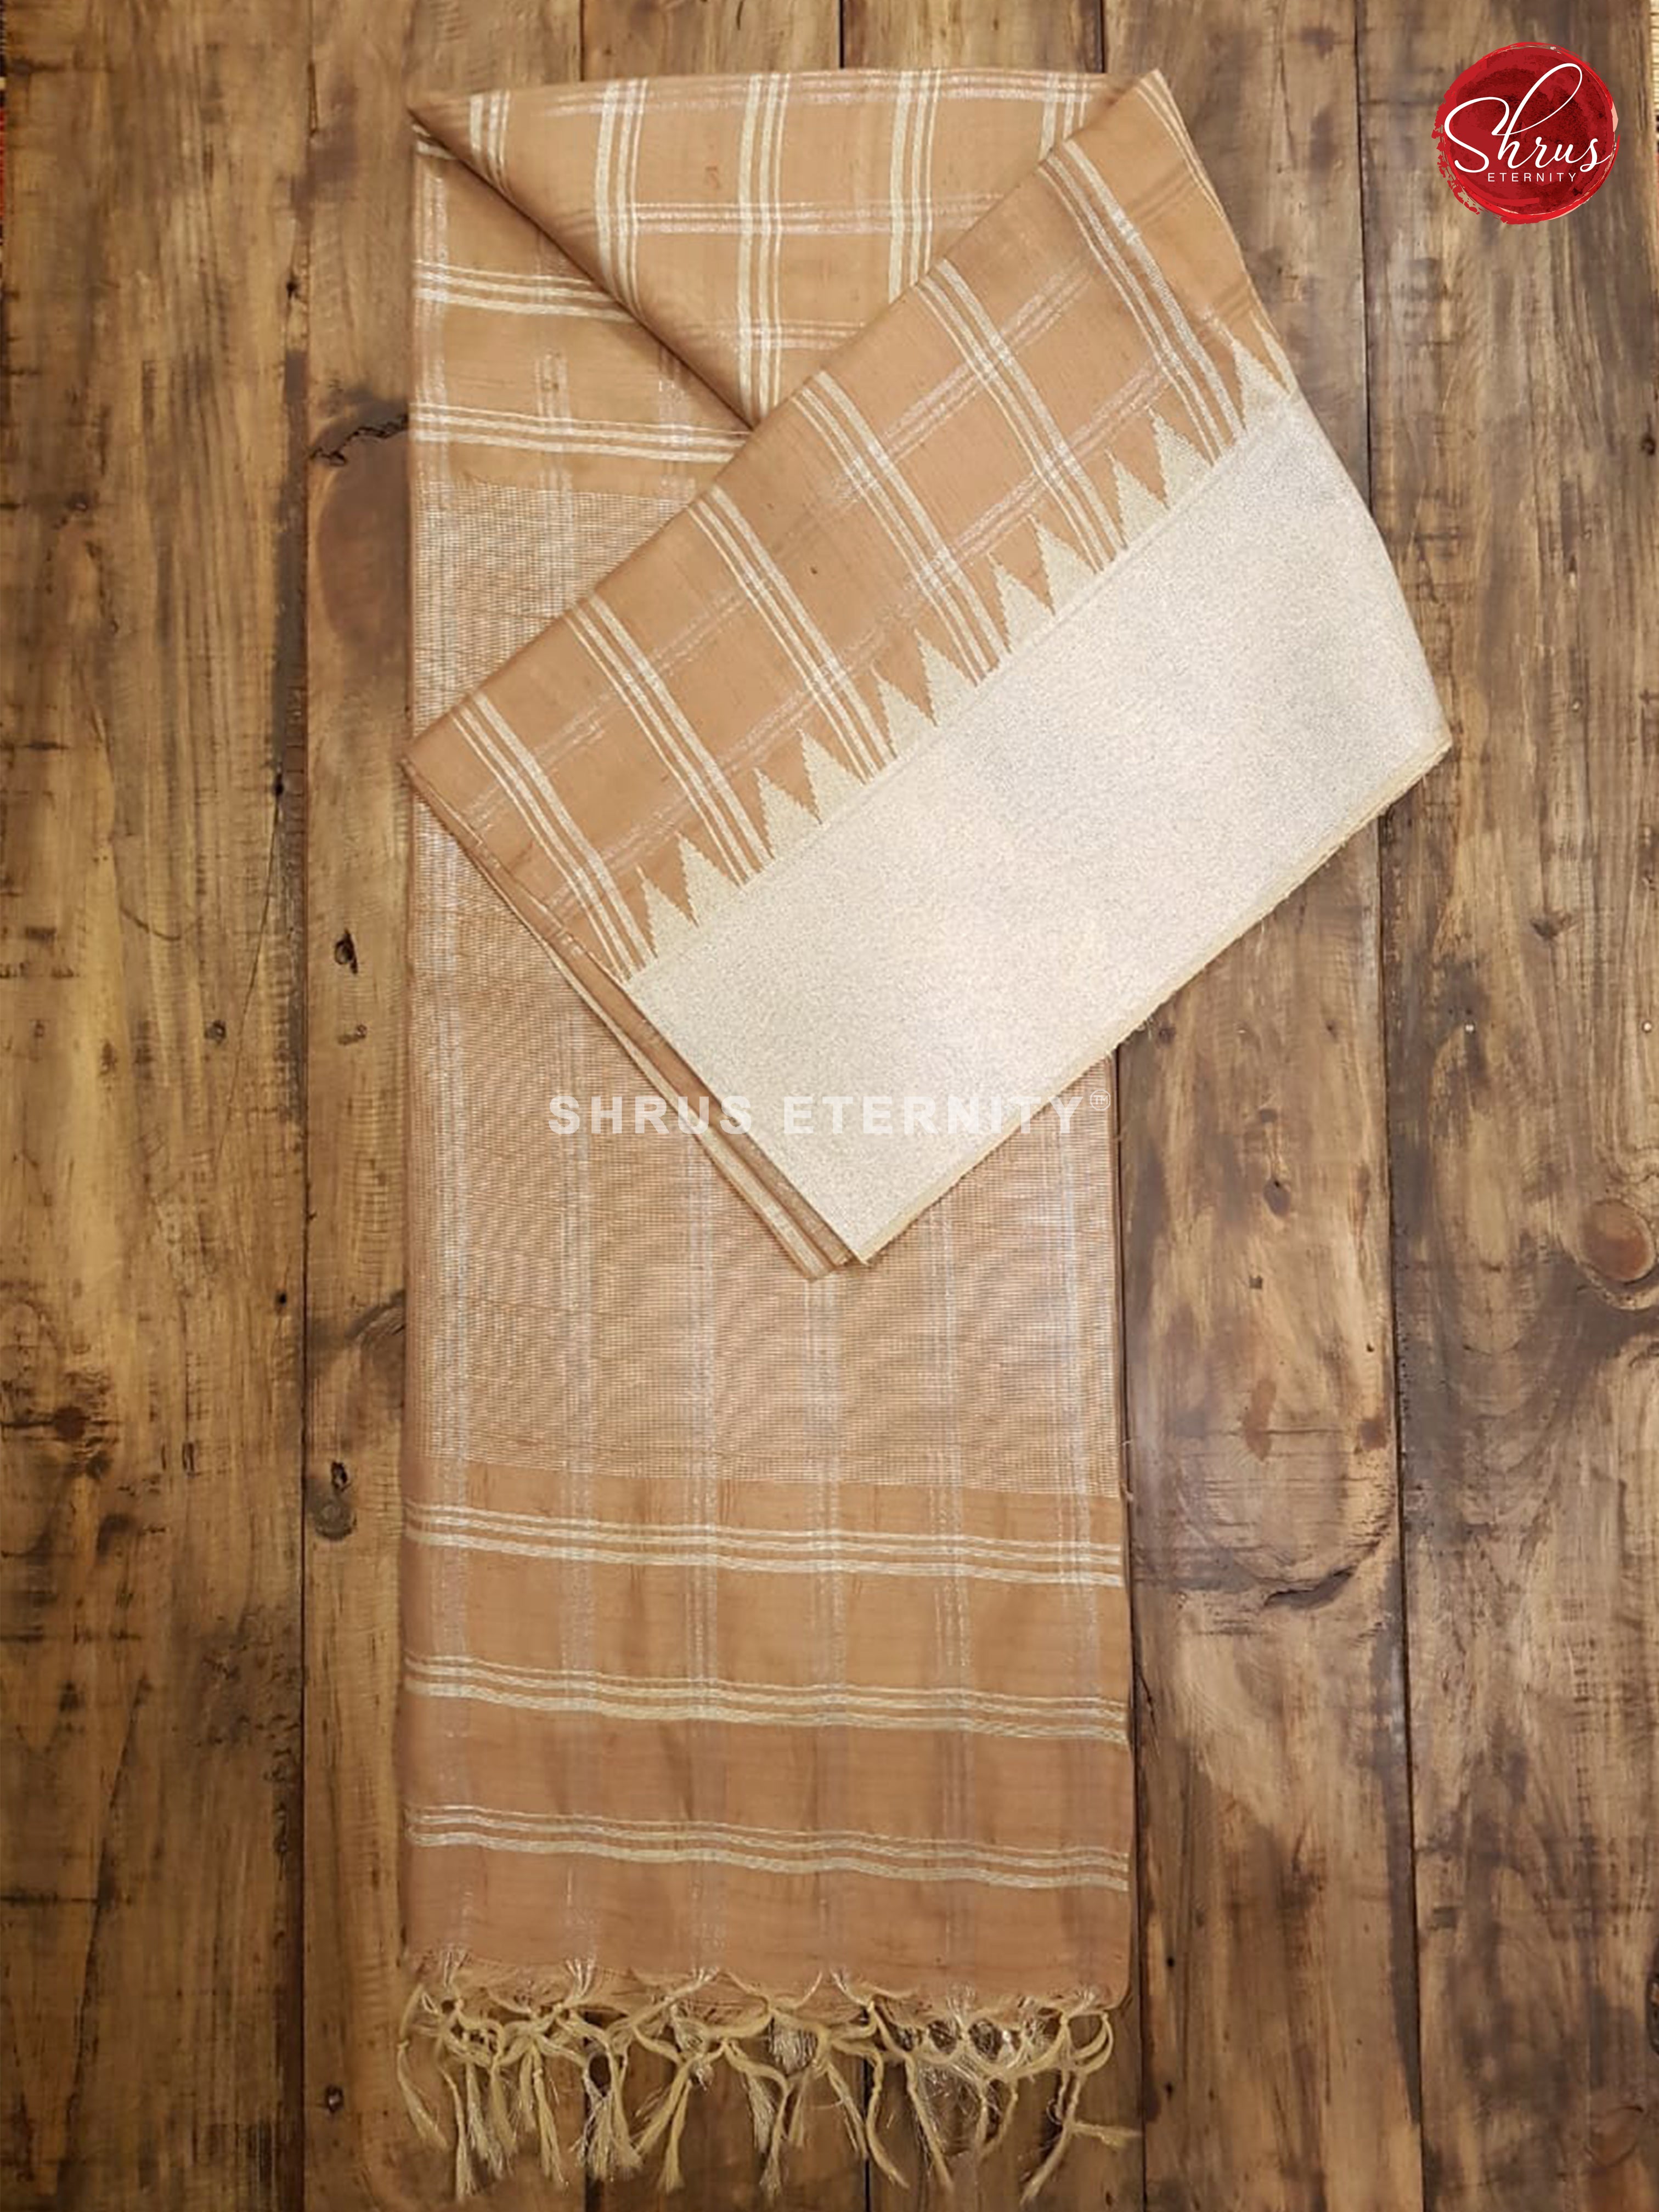 Beige & Silver - Raw silk - Shop on ShrusEternity.com